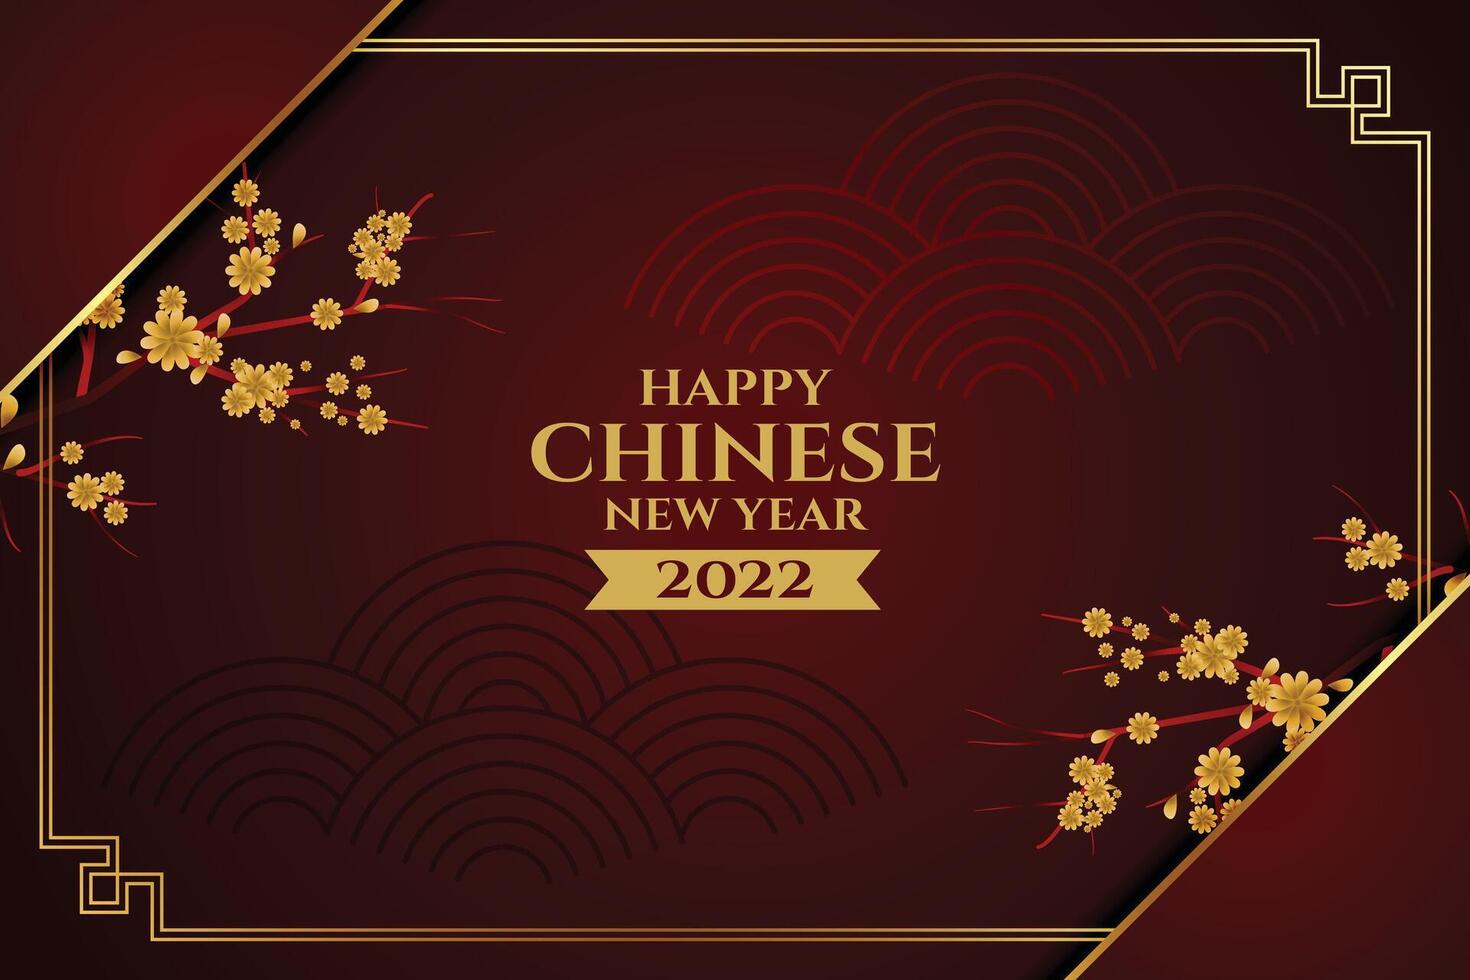 contento chino nuevo año saludo tarjeta con sakura árbol flores vector